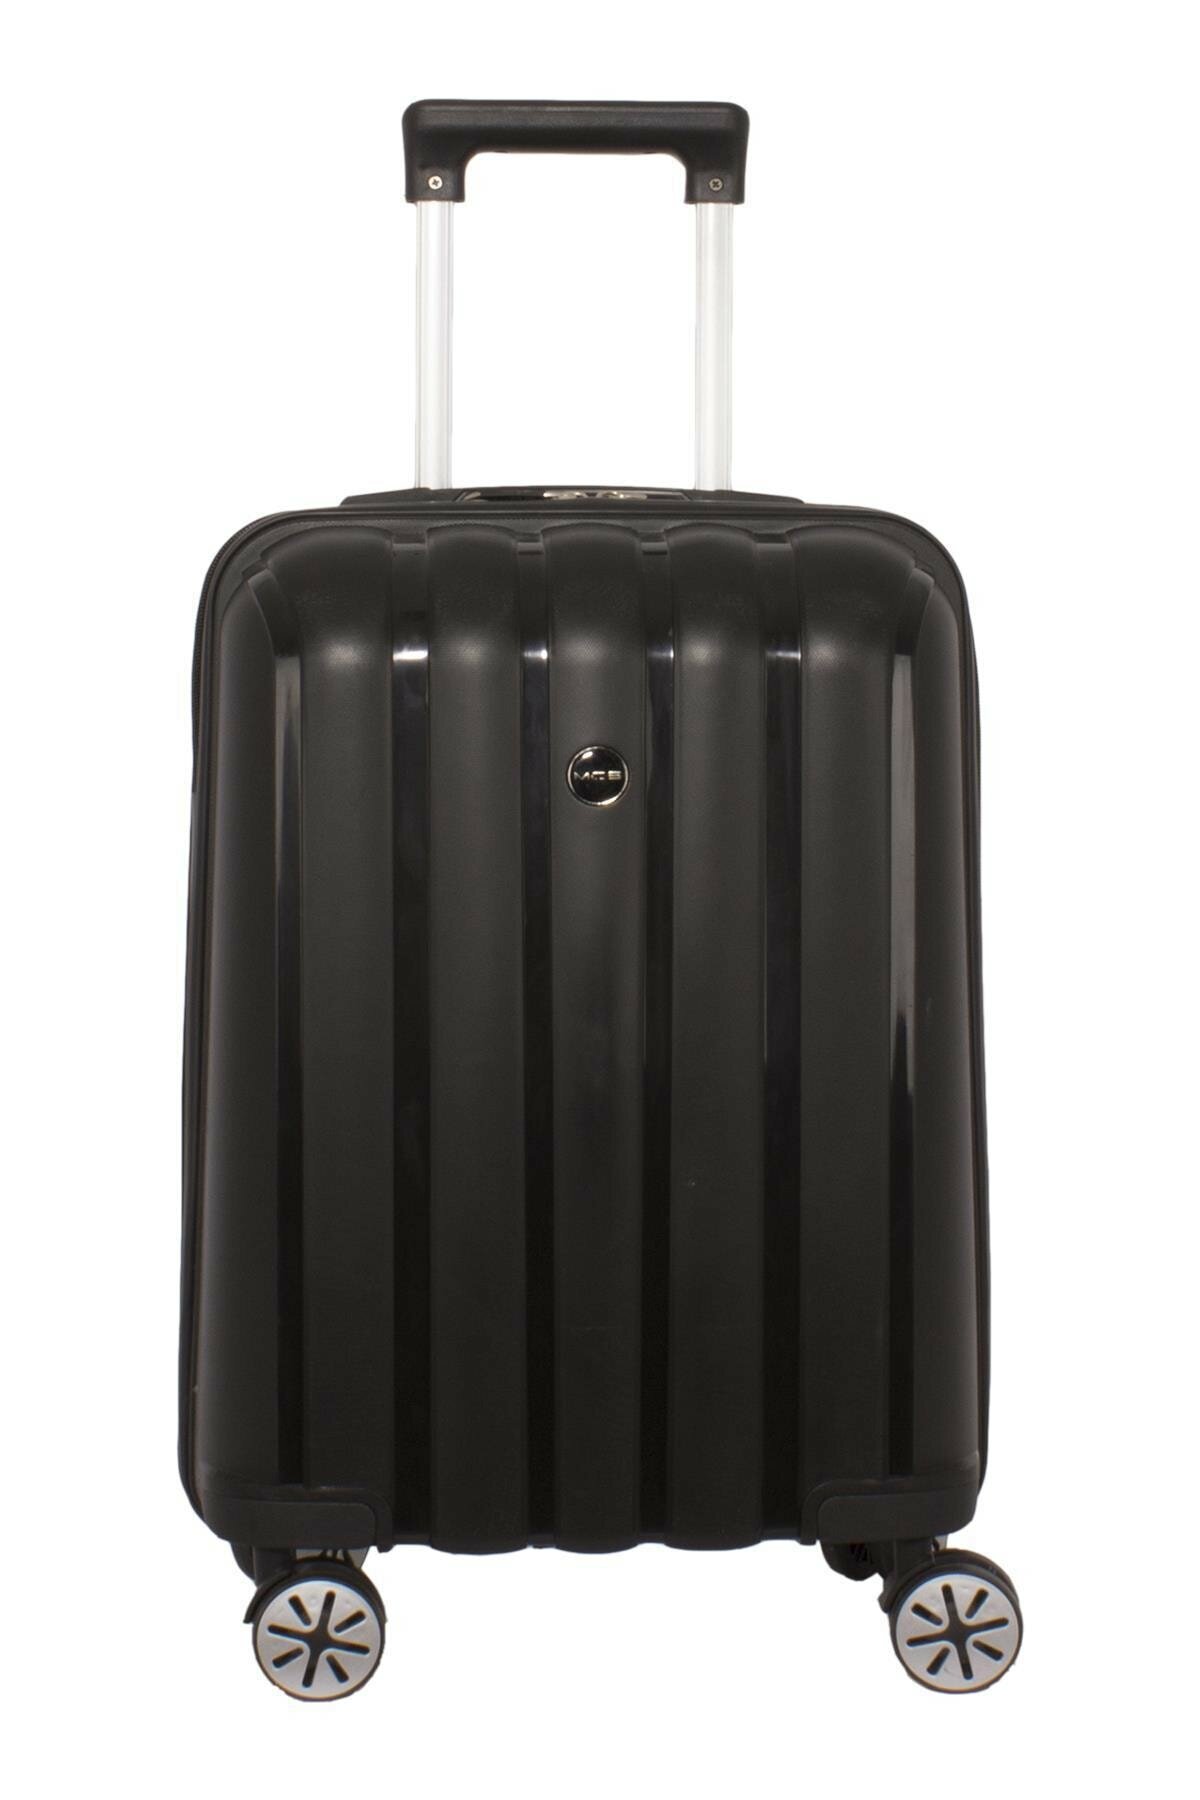 Маленький чемодан для ручьной клади из полипропилена MCS V305 S BLACK! Для 8-10 кг! - 1